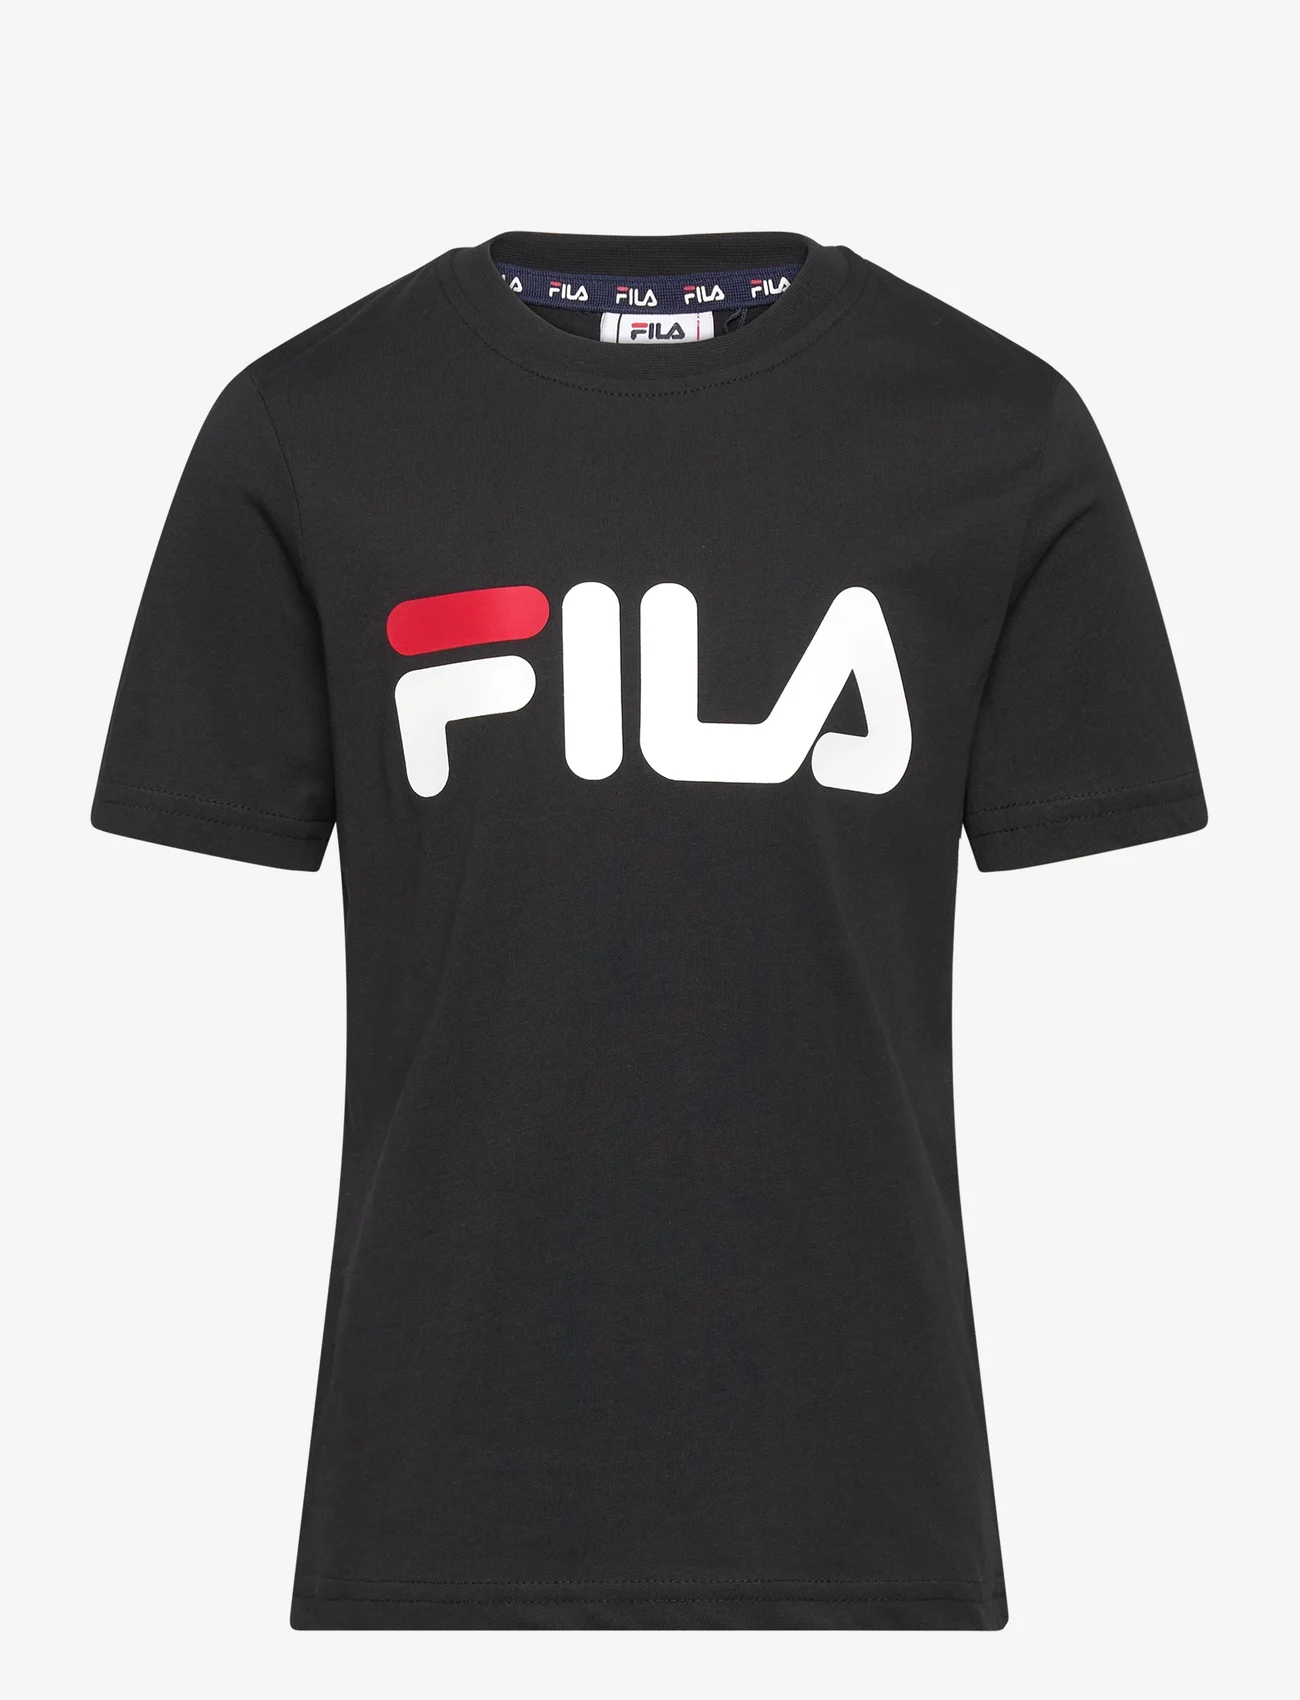 FILA - BAIA MARE classic logo tee - marškinėliai trumpomis rankovėmis - black - 0